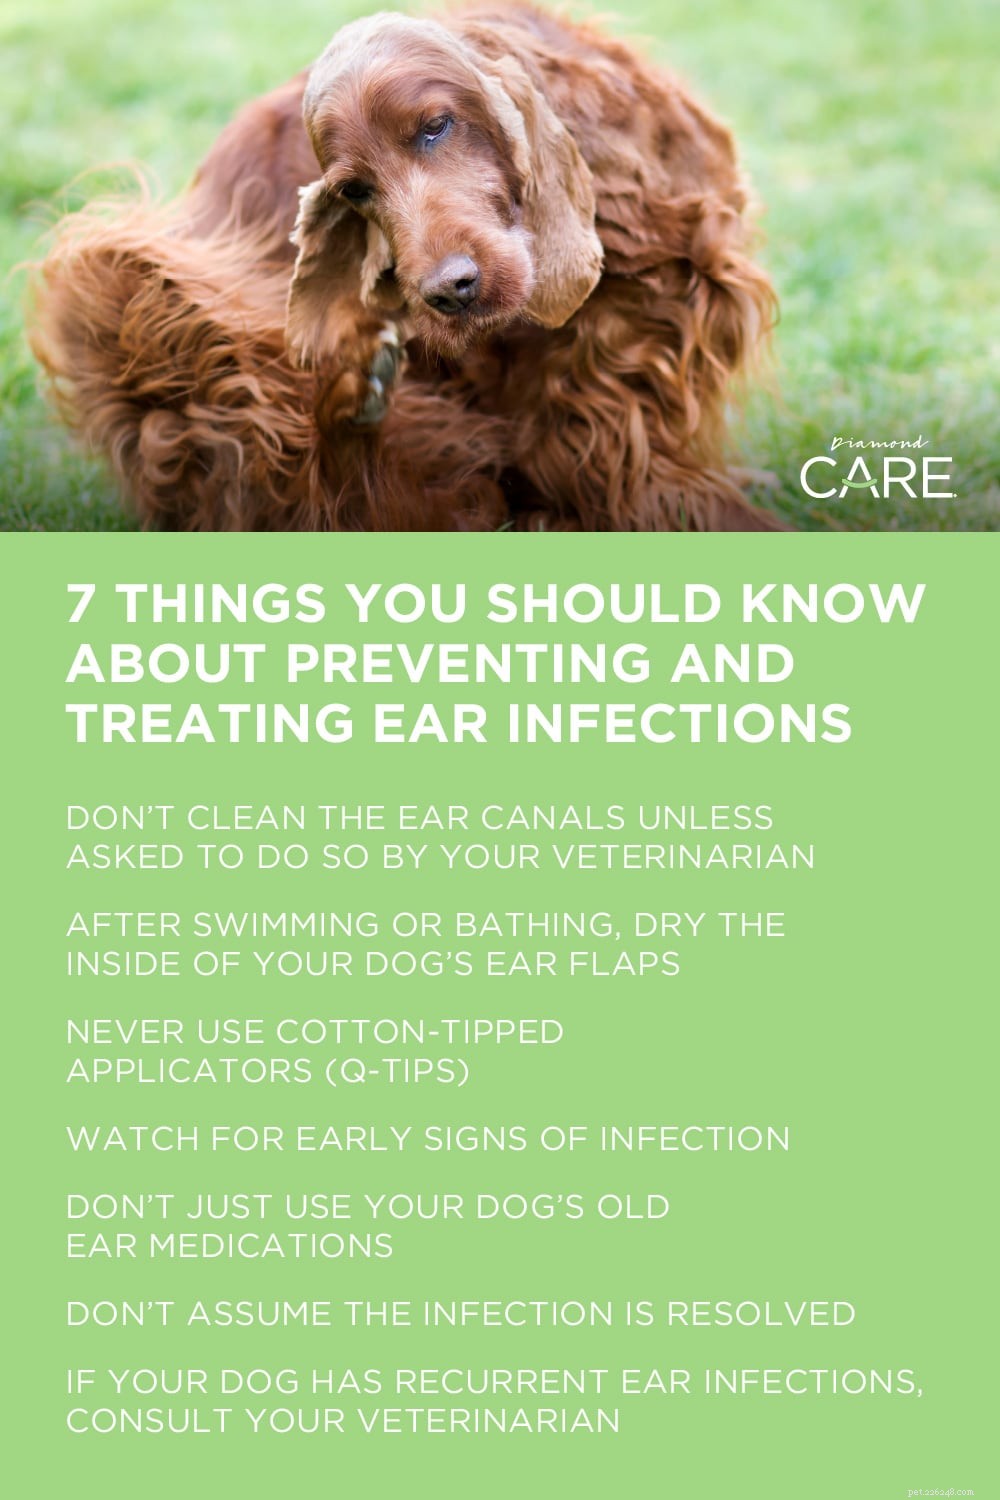 Aproveite as infecções de ouvido na primavera